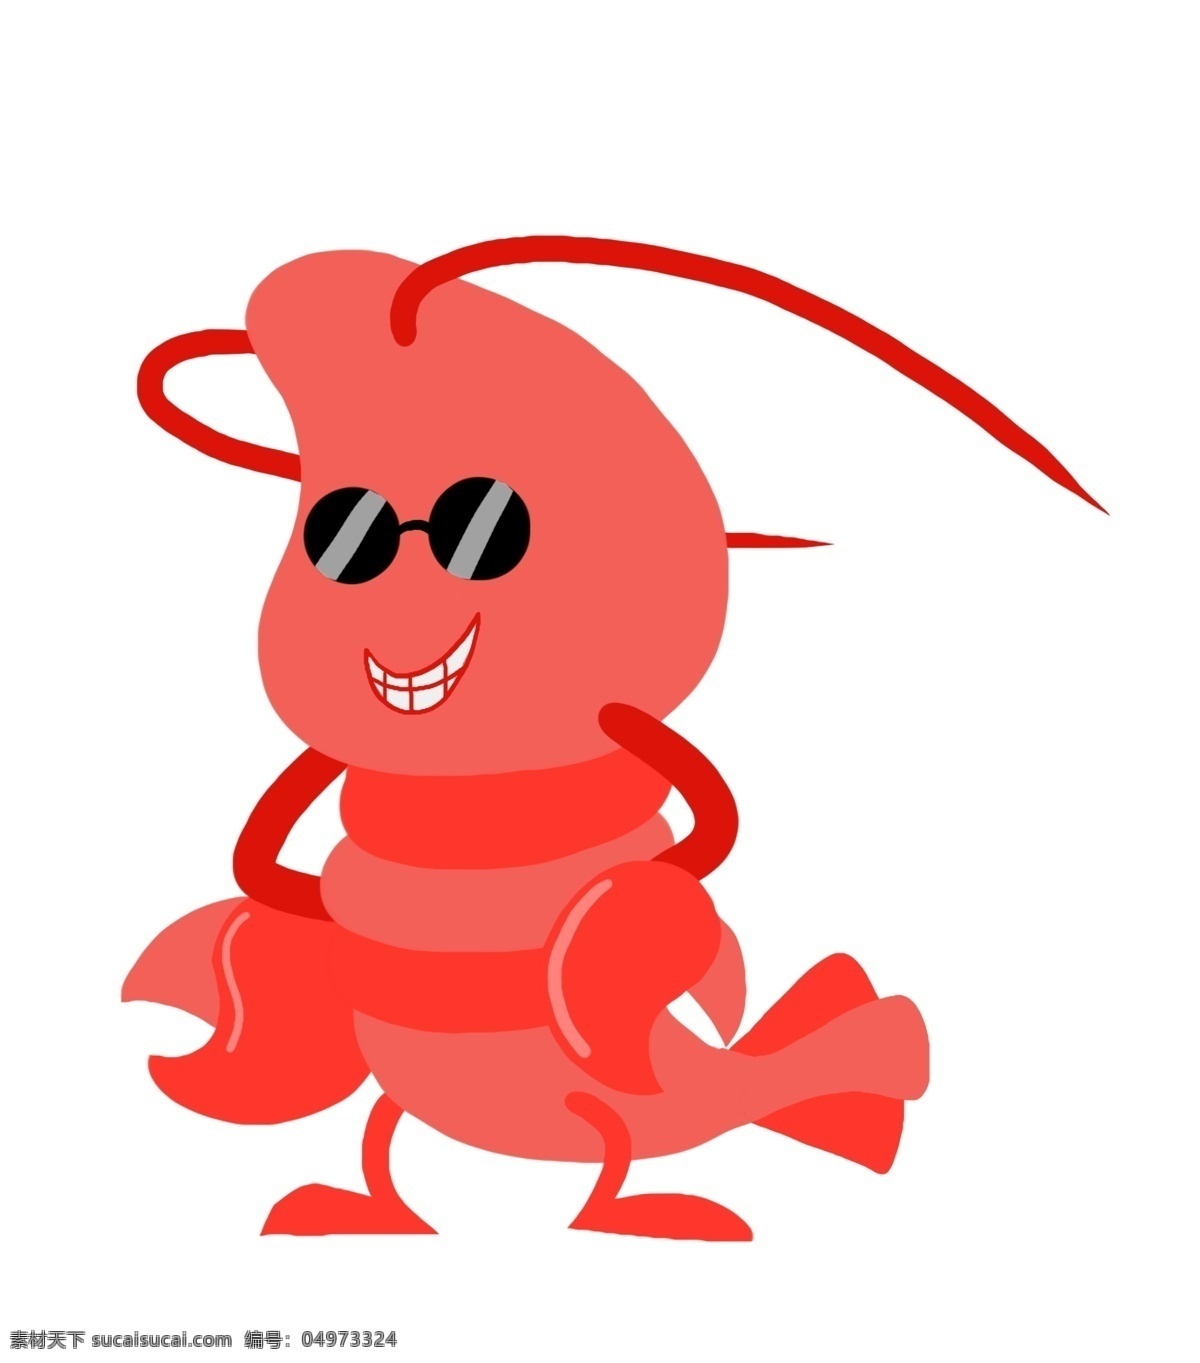 酷 龙虾 装饰 插画 酷酷的龙虾 漂亮的龙虾 红色的龙虾 创意龙虾 立体龙虾 可爱的龙虾 调皮的龙虾